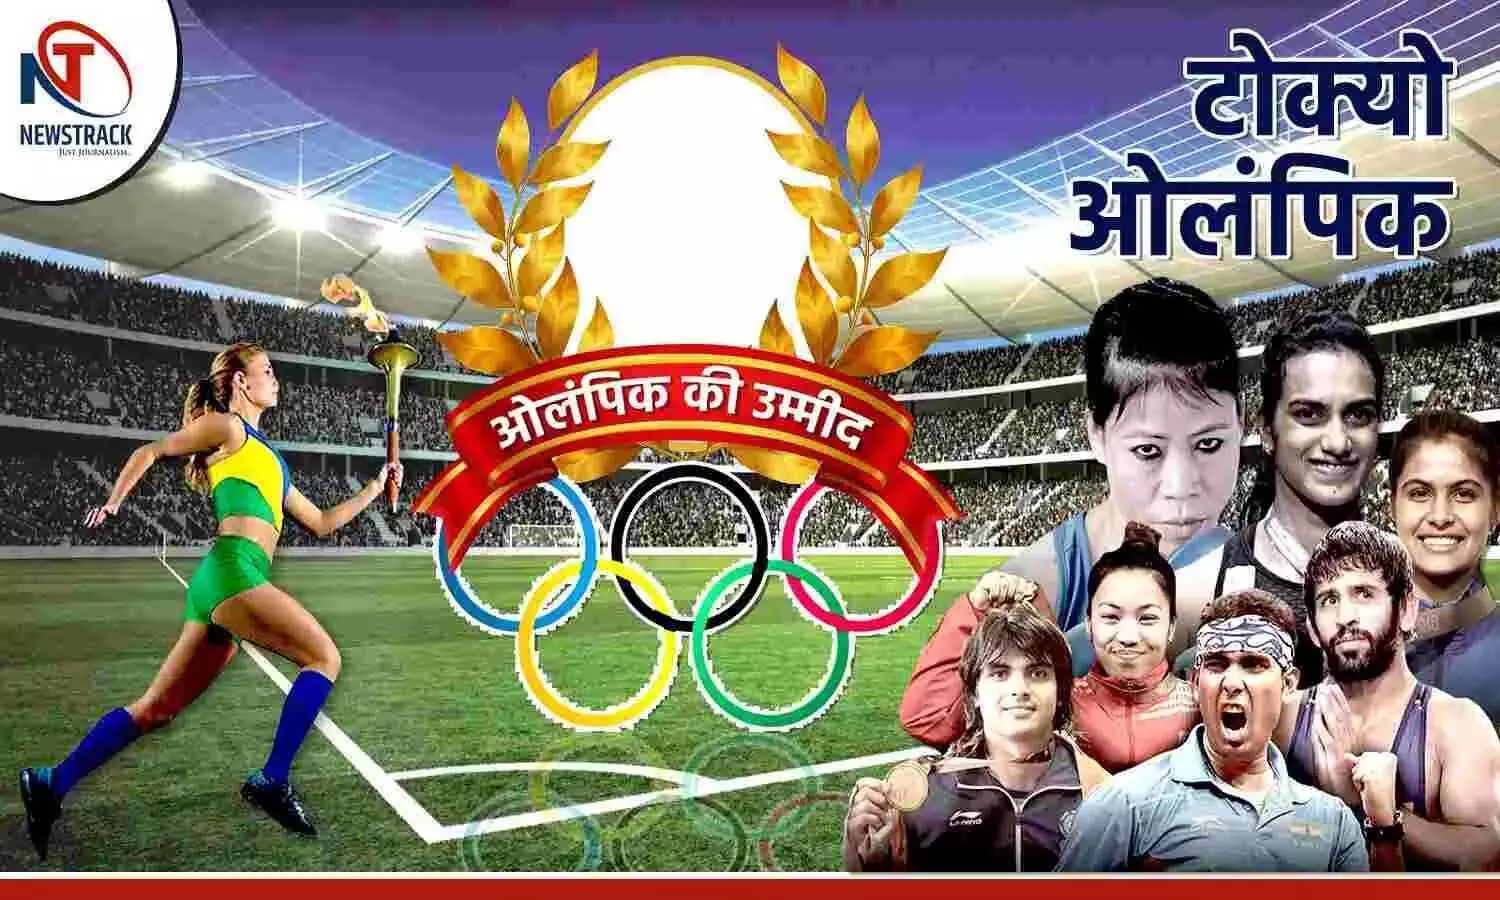 Tokyo Olympics: ओलंपिक से अब तक ये भारतीय खिलाड़ी हुए बाहर, इनसे मेडल की उम्मीद